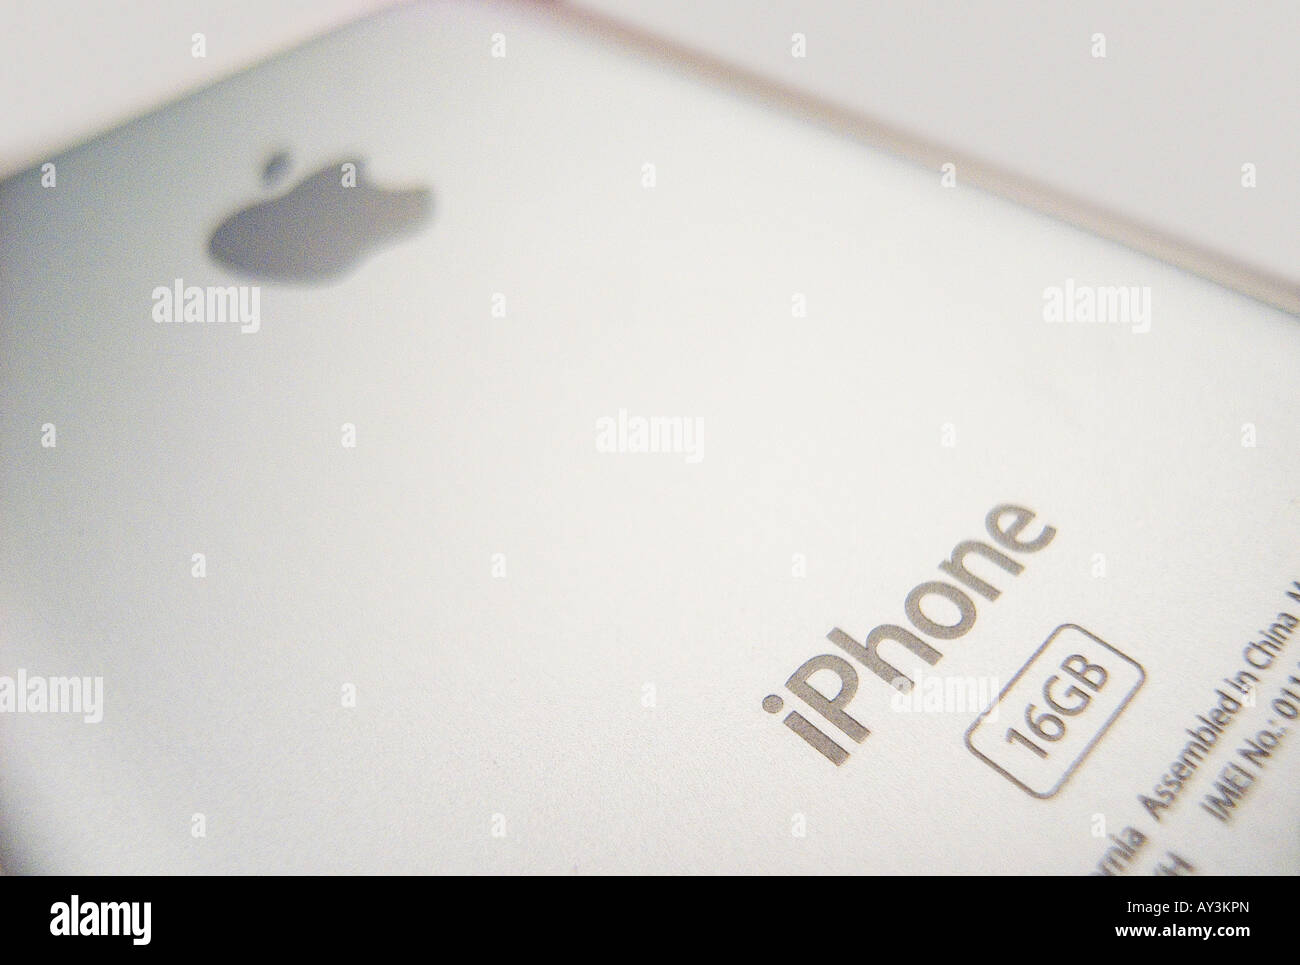 Apple iPhone Stock Photo